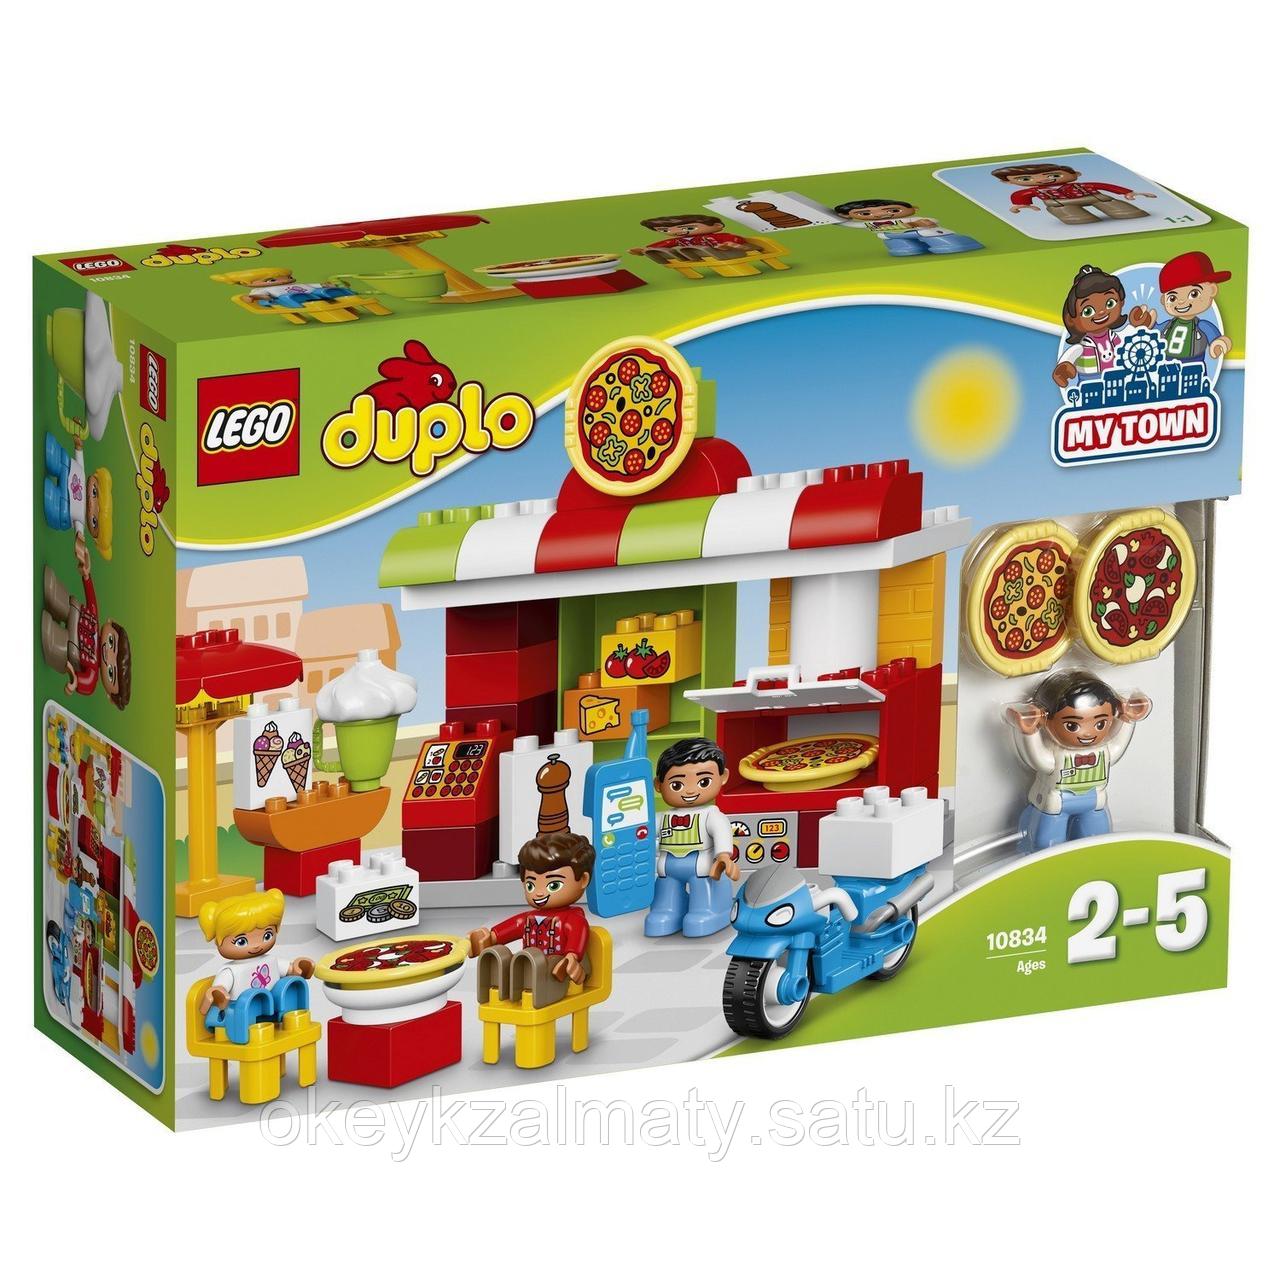 LEGO Duplo: Пиццерия 10834